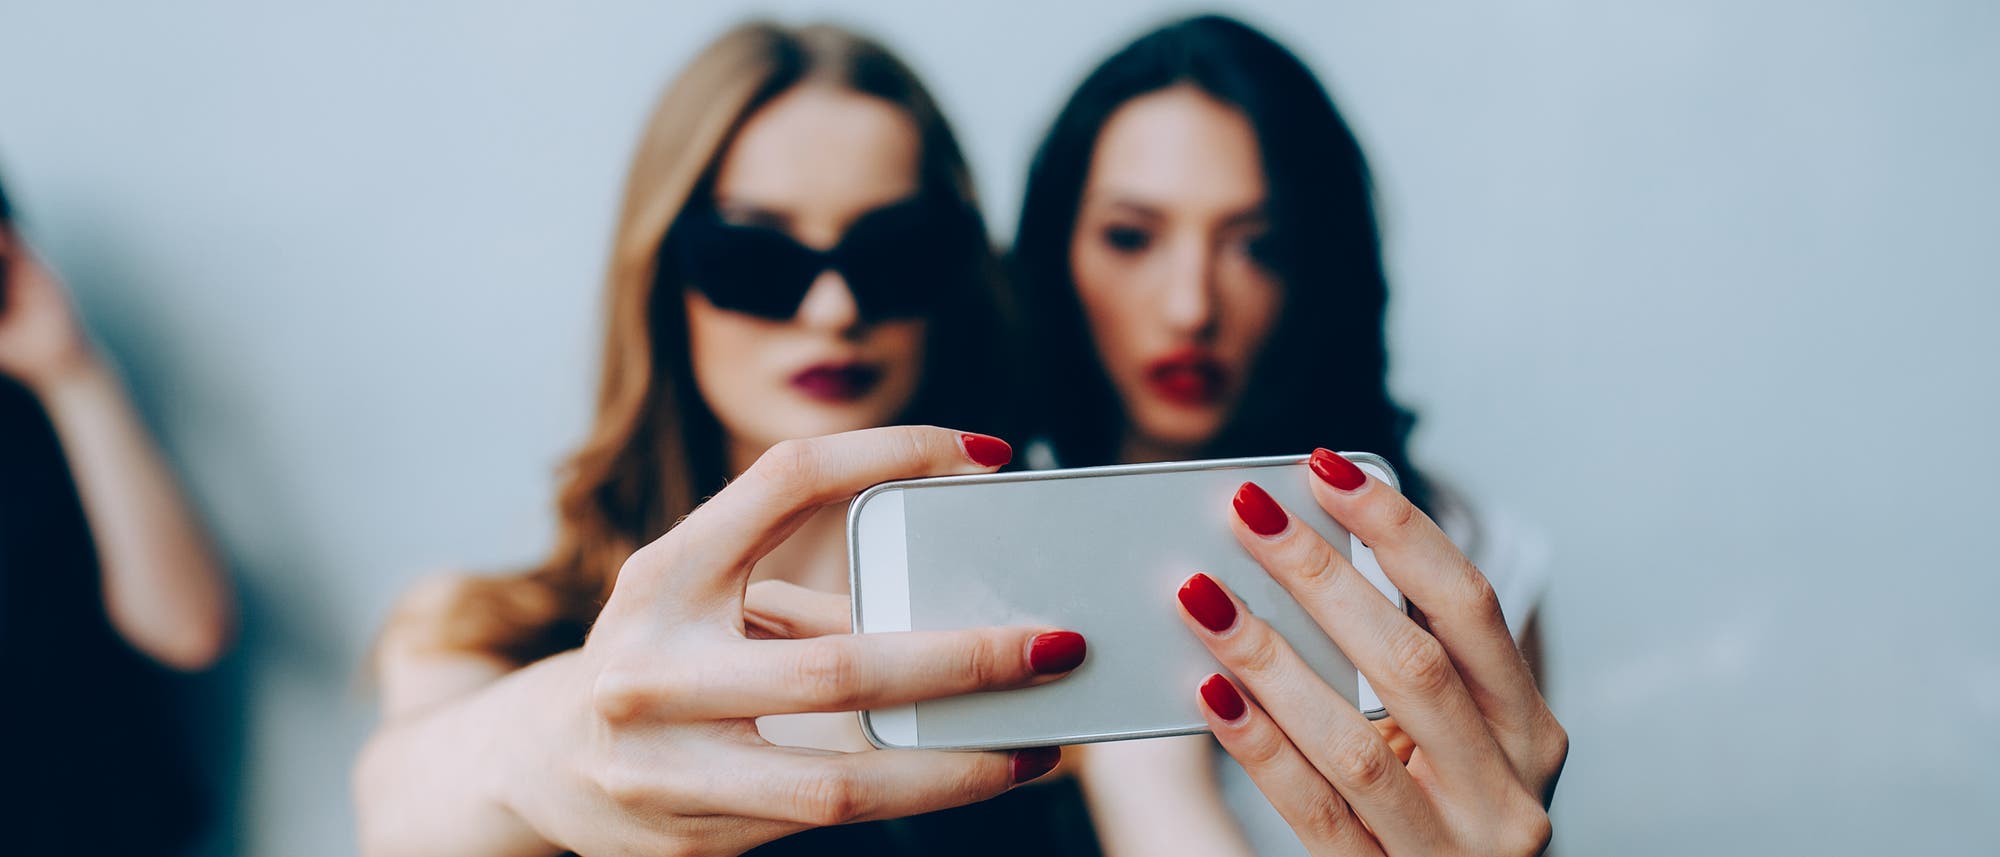 Zwei junge Frauen machen ein Selfie mit ihrem Smartphone